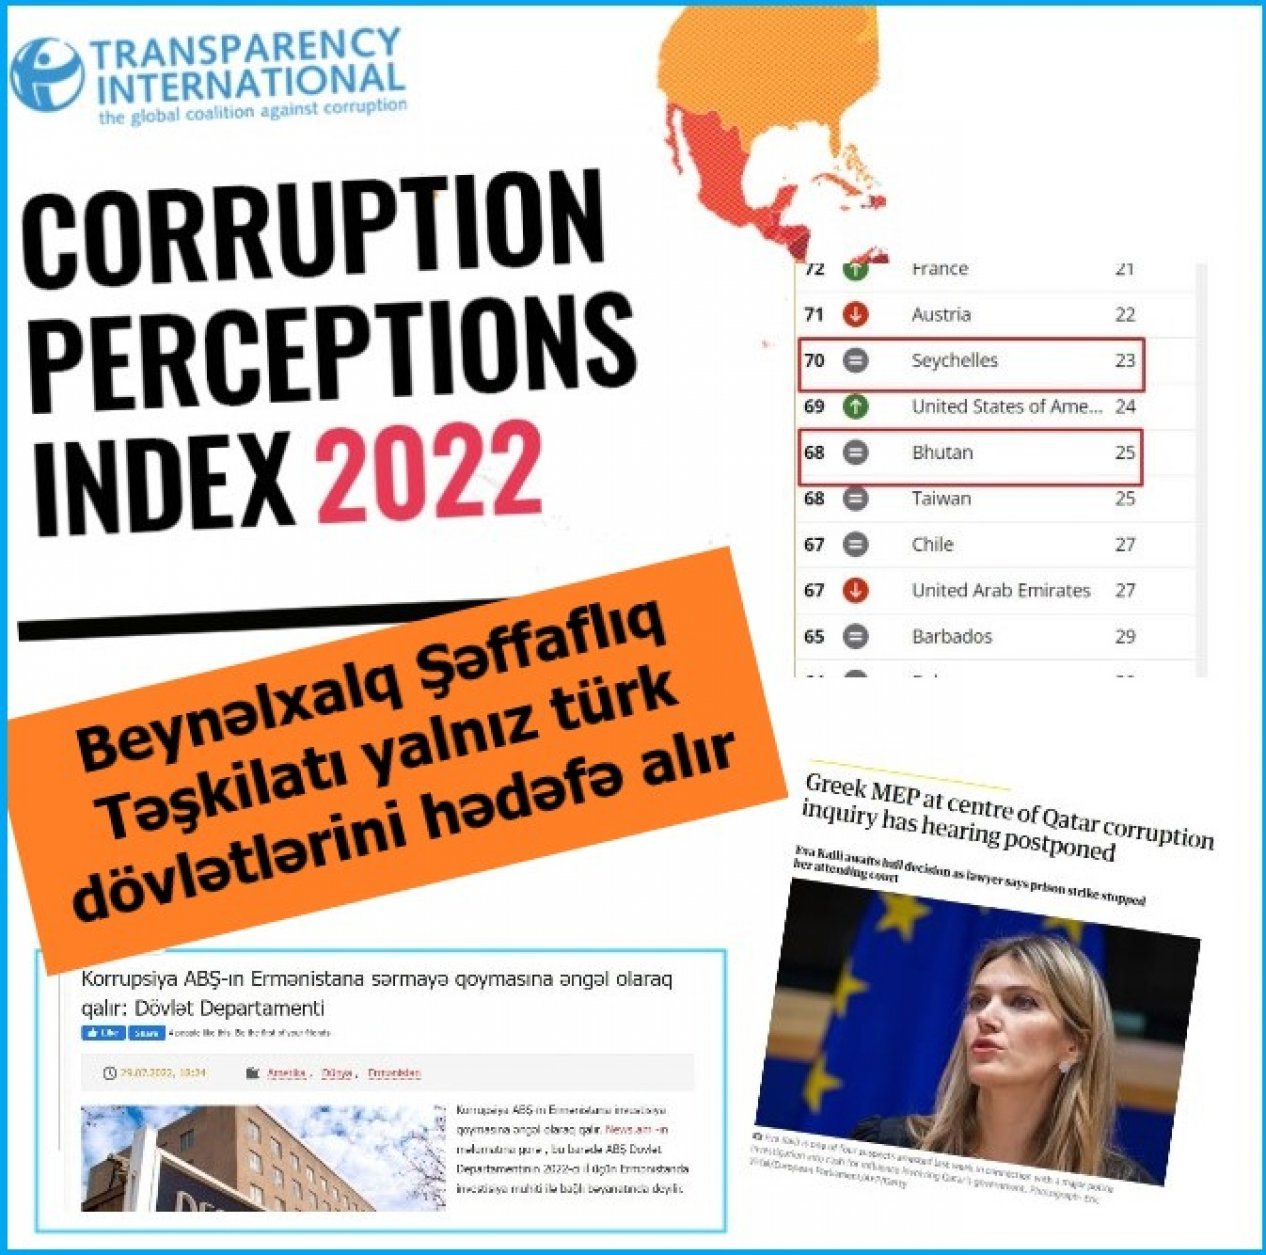 Transparency International нацелилась только на тюркские государства?